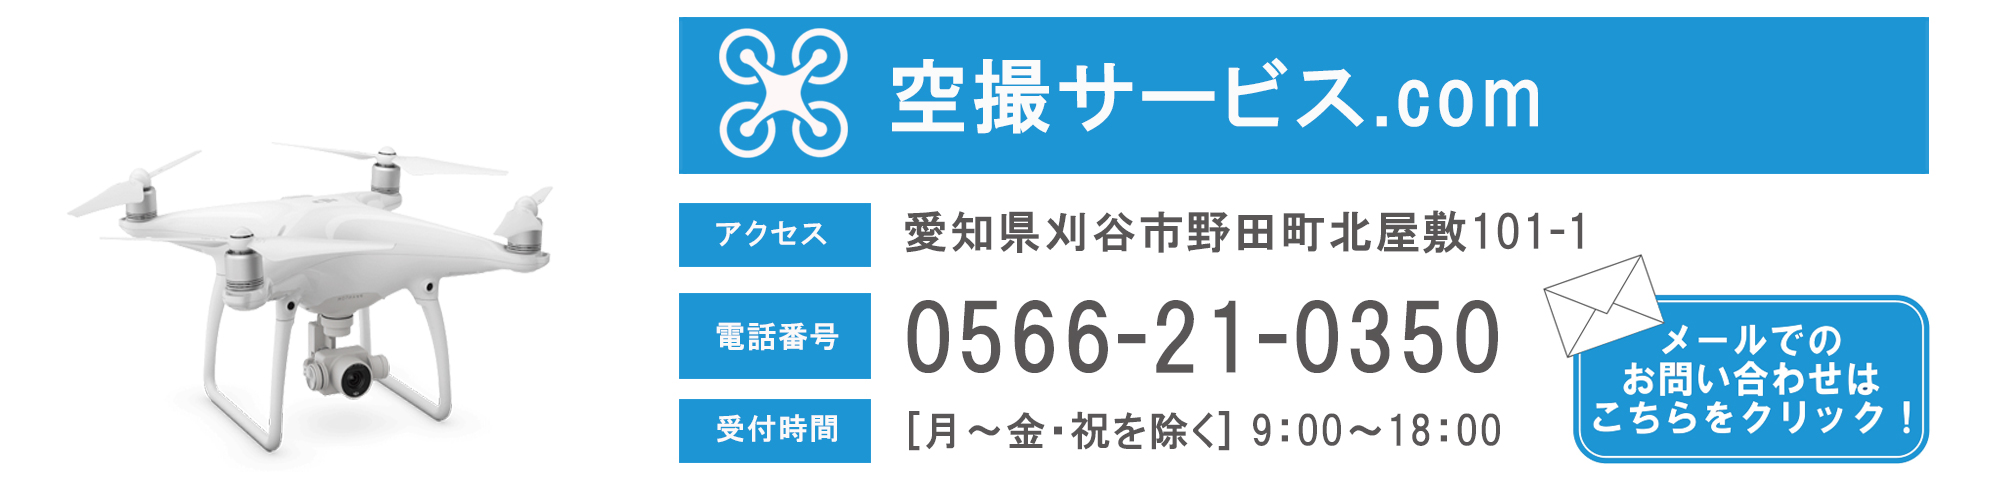 愛知県内で切盛土の土量算出や土量計算、出来形管理でお悩みならコチラからご相談下さい。